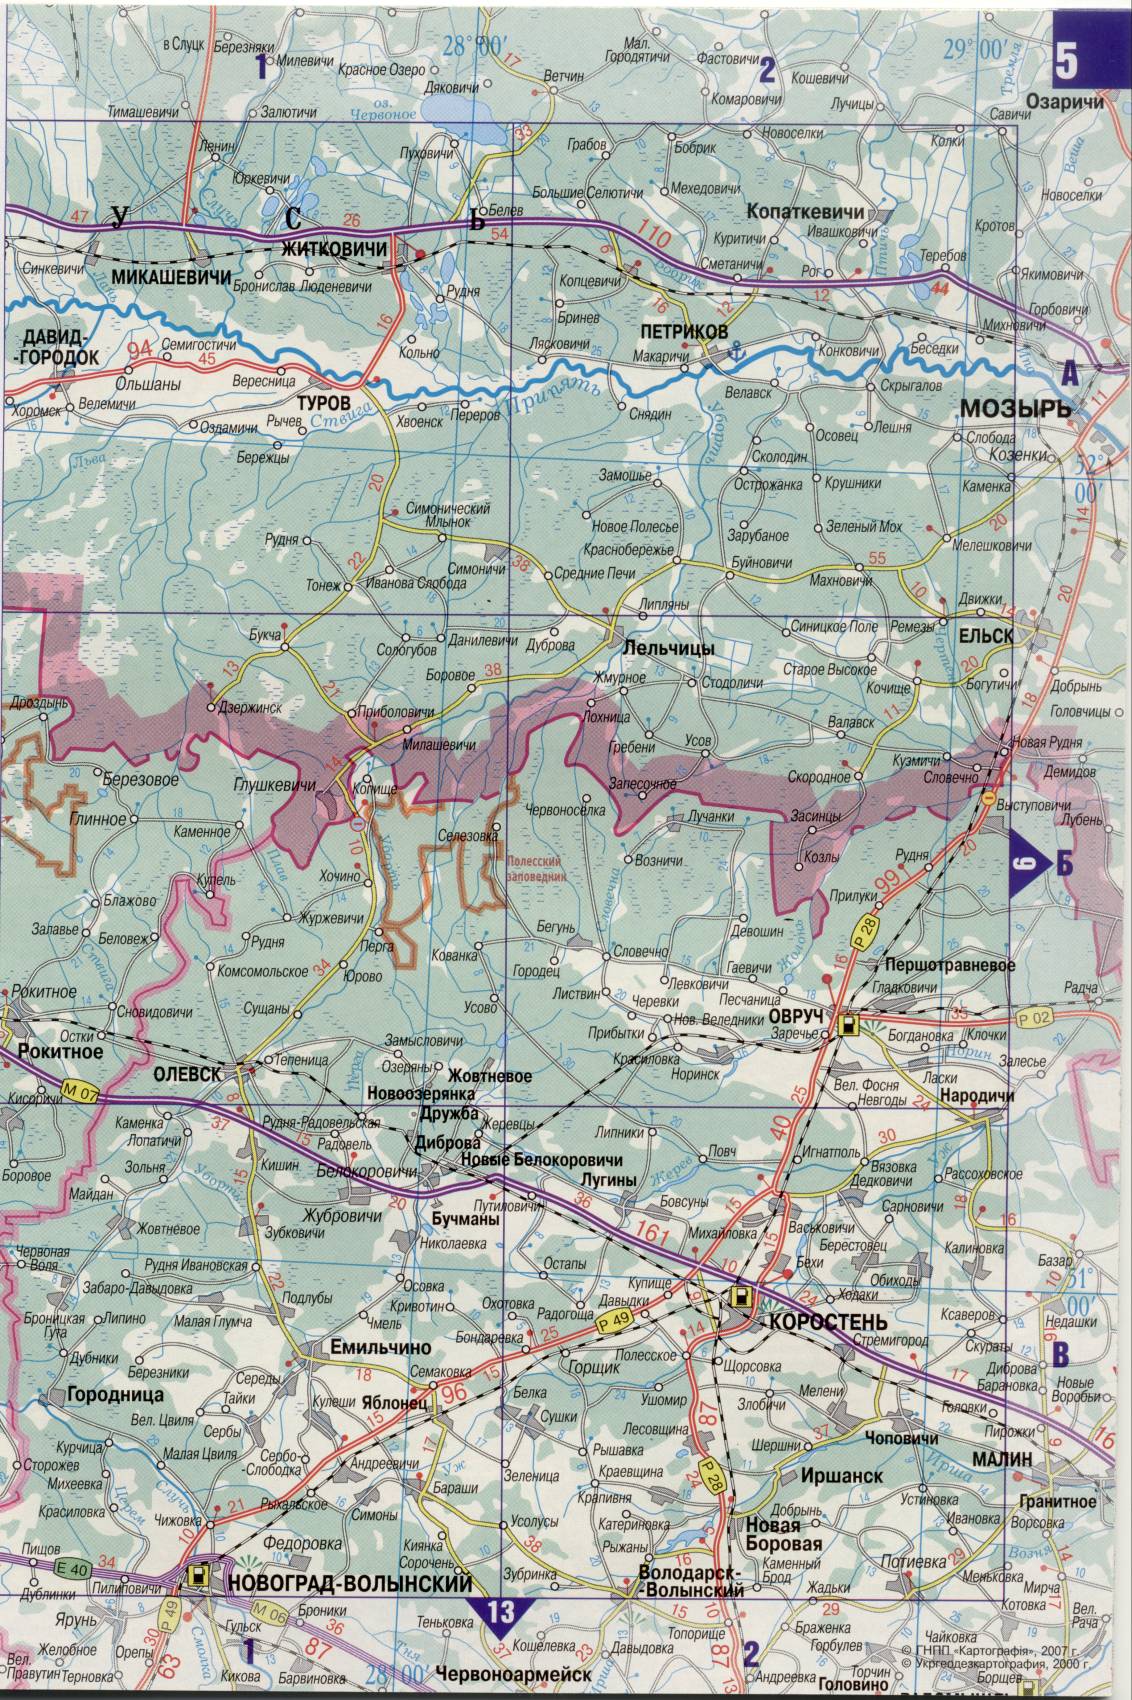 Karte der Ukraine. Detaillierte Straßenkarte der Ukraine avtomobilnog Satin. kostenlos herunterladen, D0